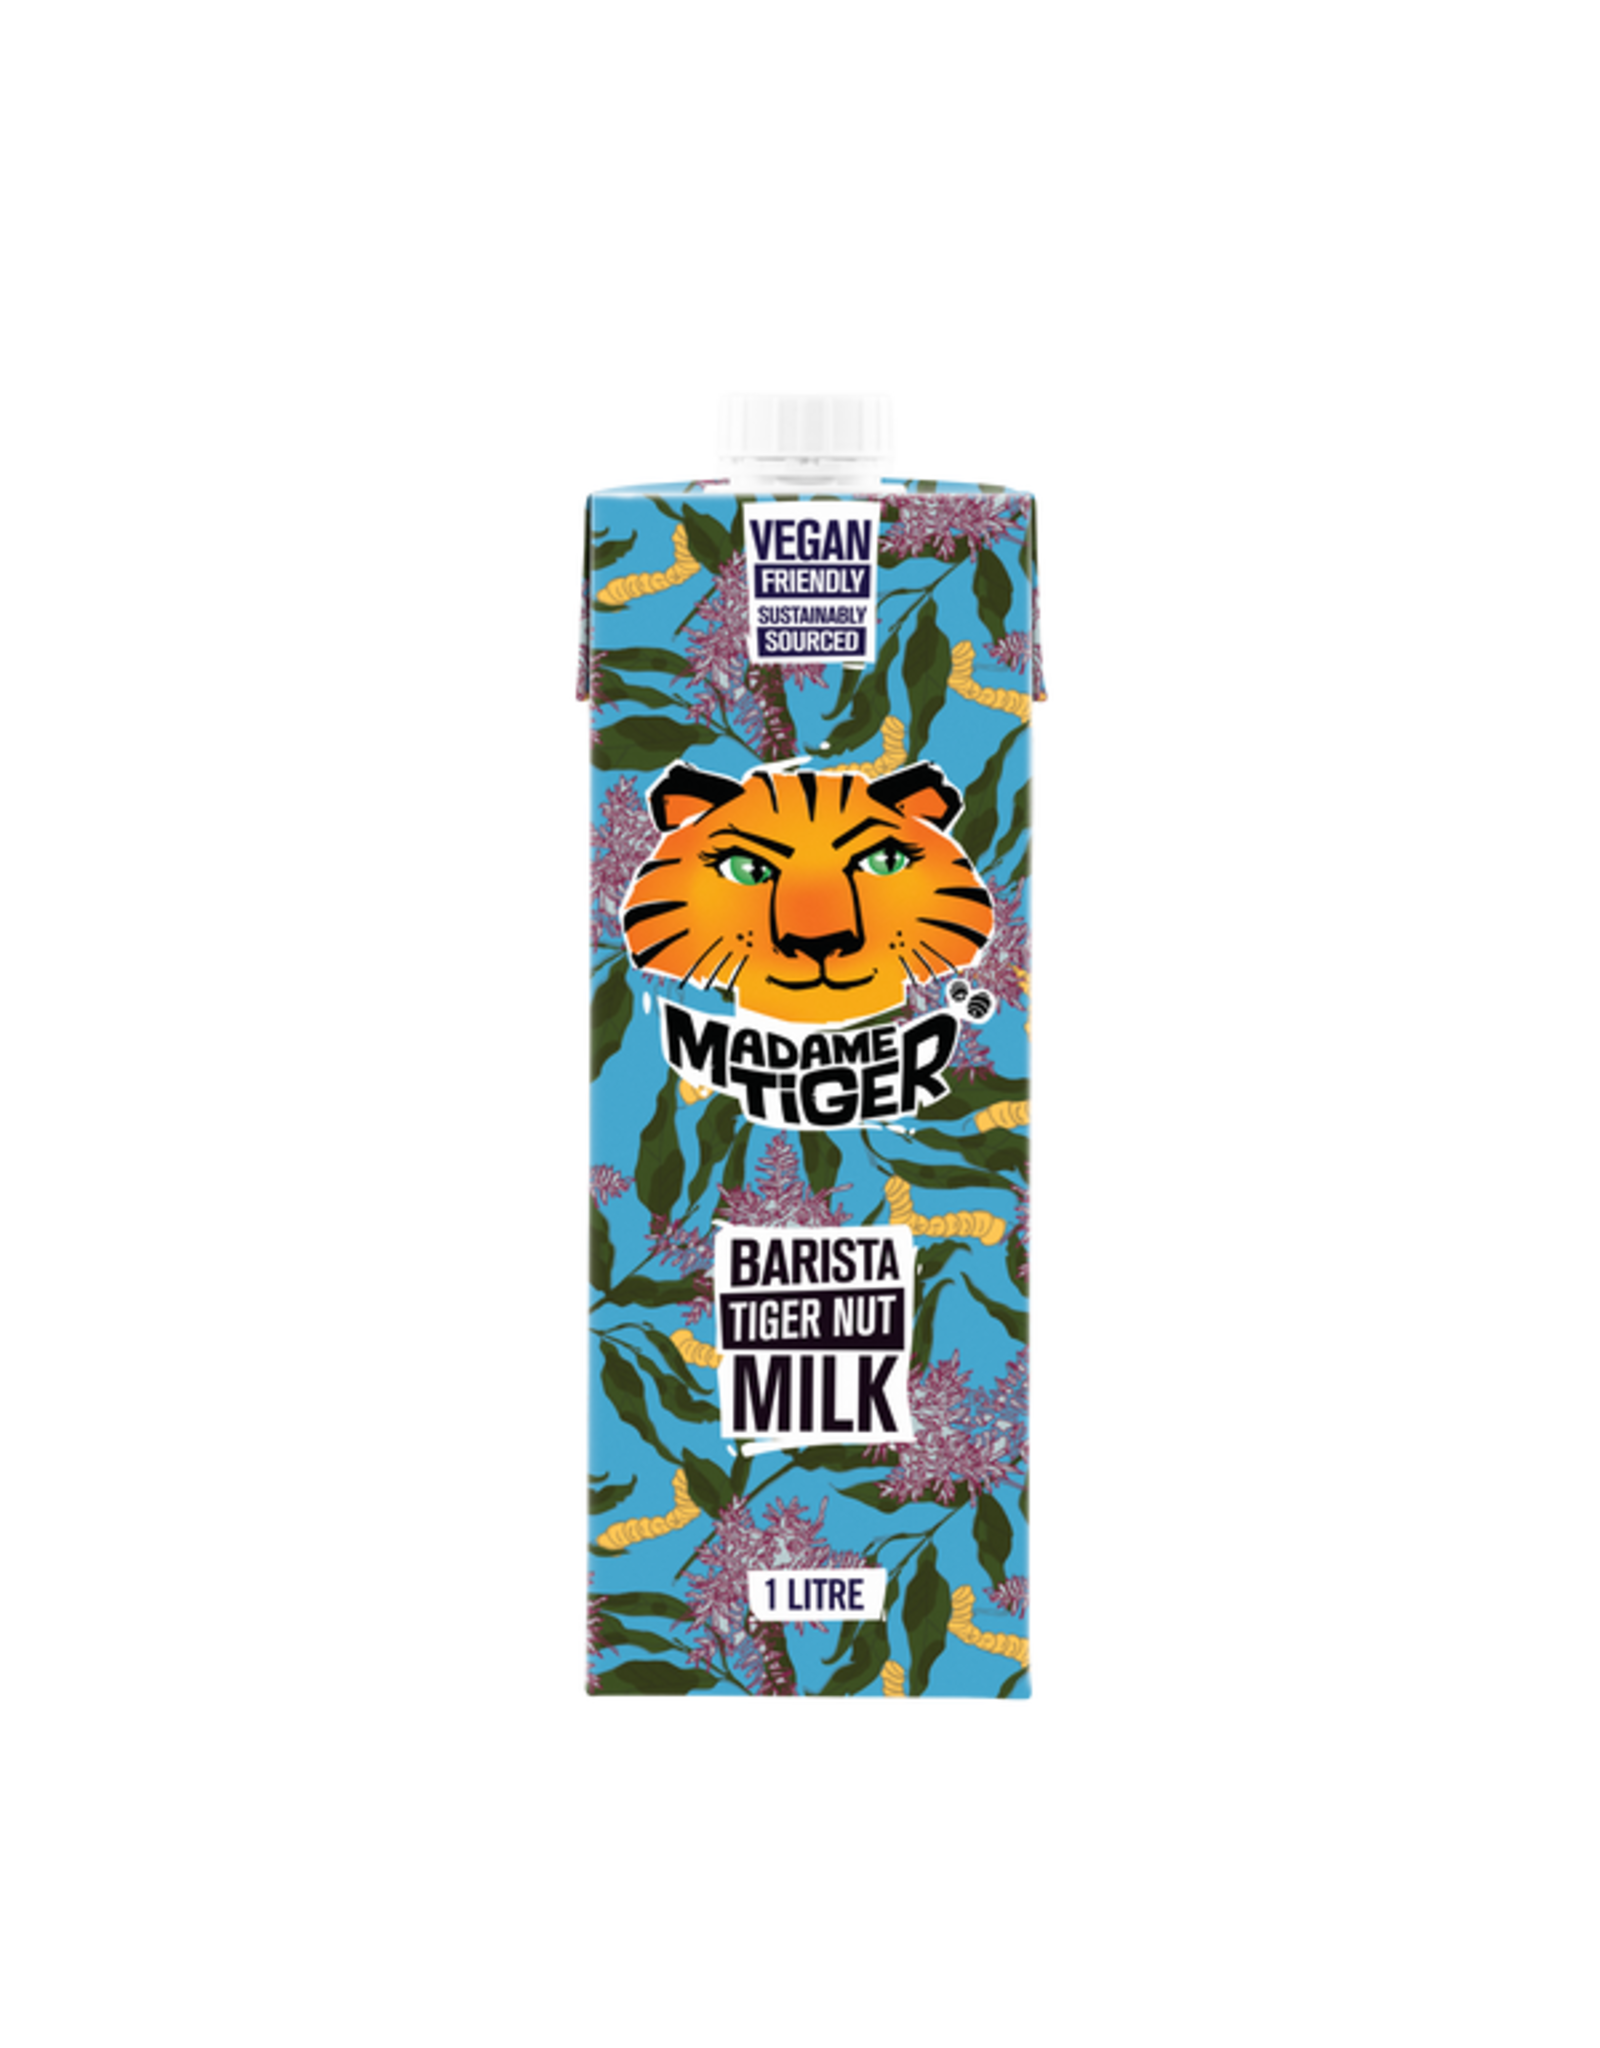 Madame Tiger Tiger Nut Milk - Barista